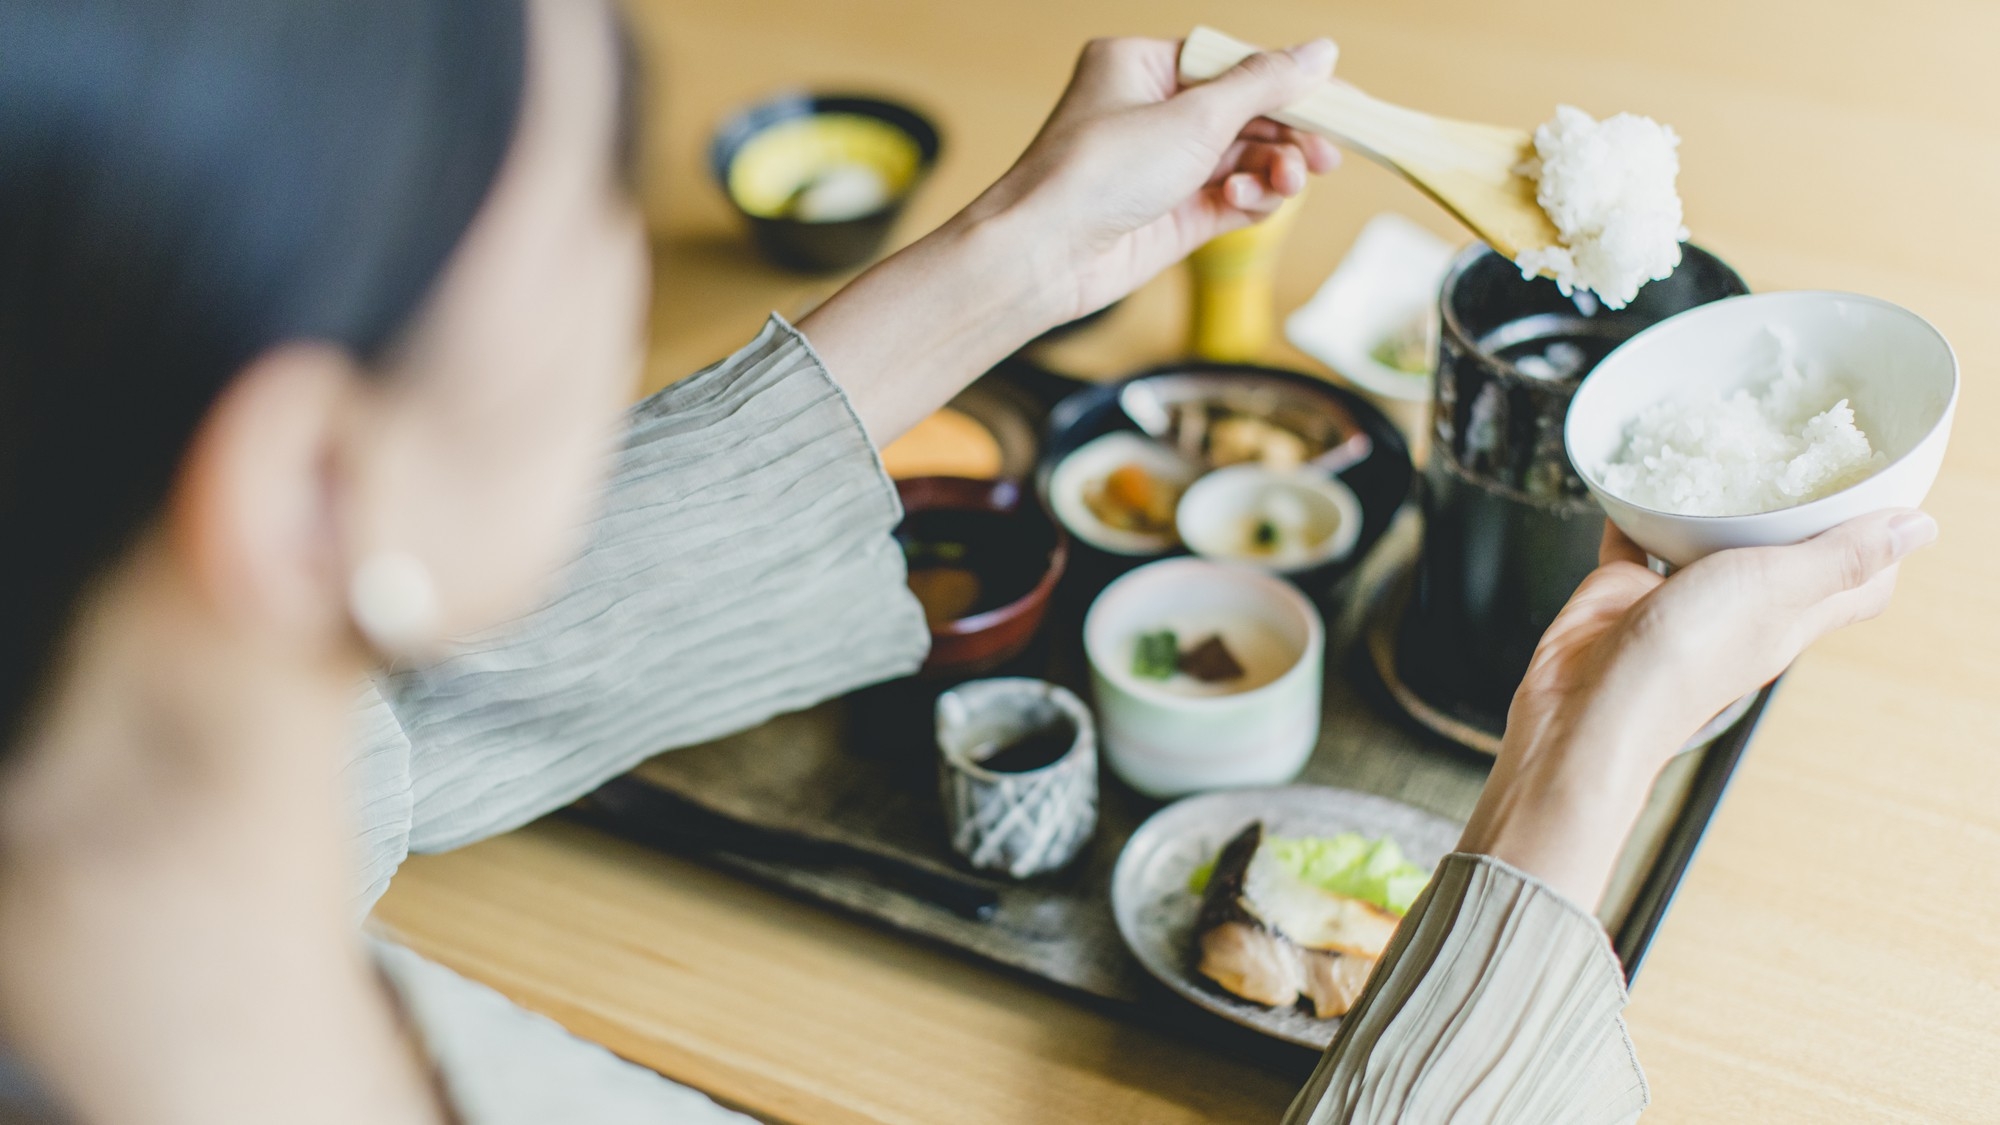 【ゆとりの連泊ステイ】古都京都でご家族やご友人とゆっくりと過ごす連泊プランー和洋選べる朝食付きー